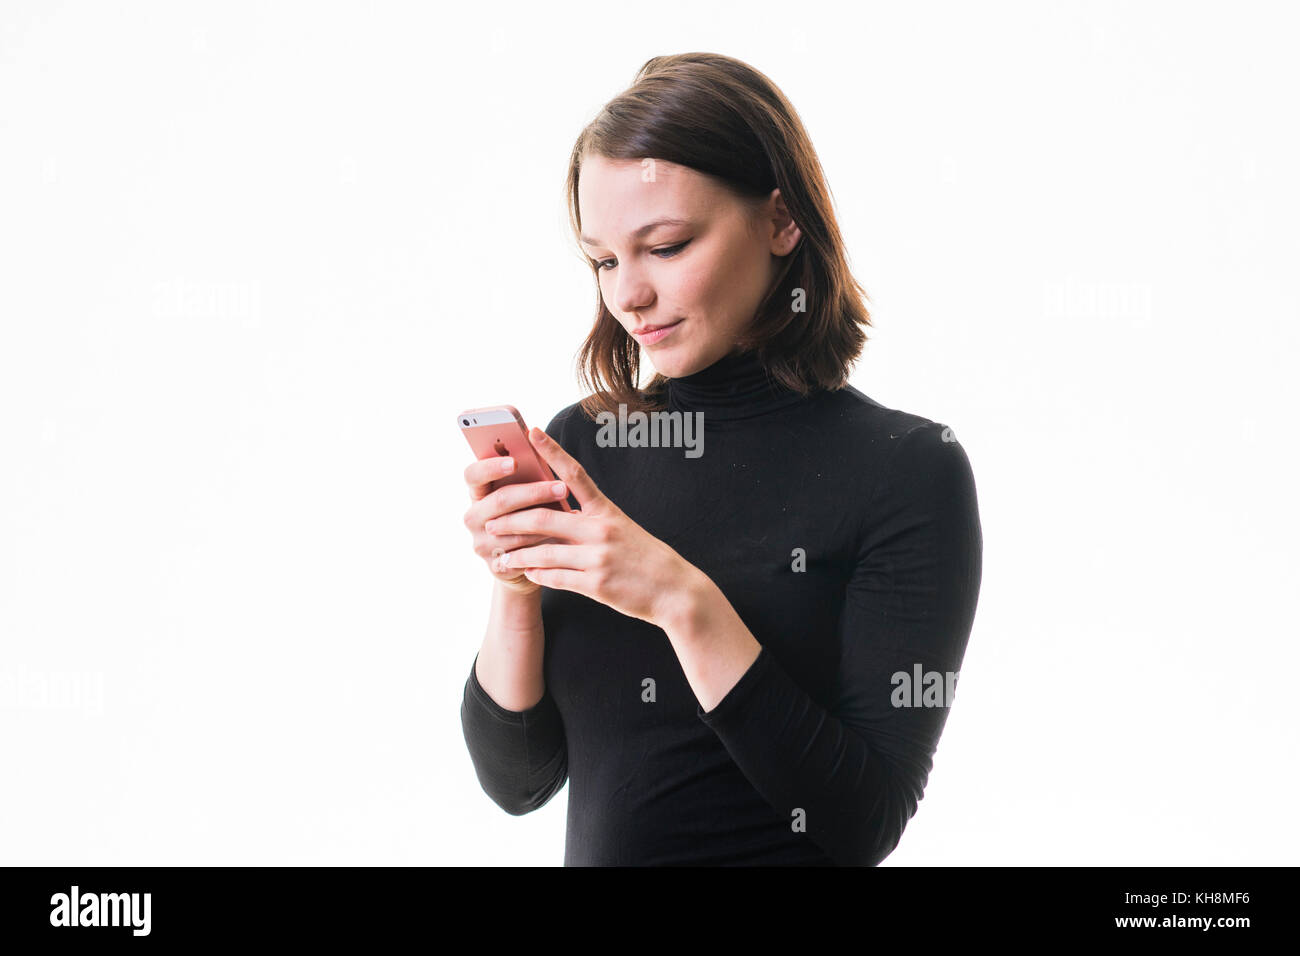 Eine junge Braunhaarige kaukasischen Jugendmädchen Messaging sms auf ihrem Handy, Smartphone, Handy, Stockfoto